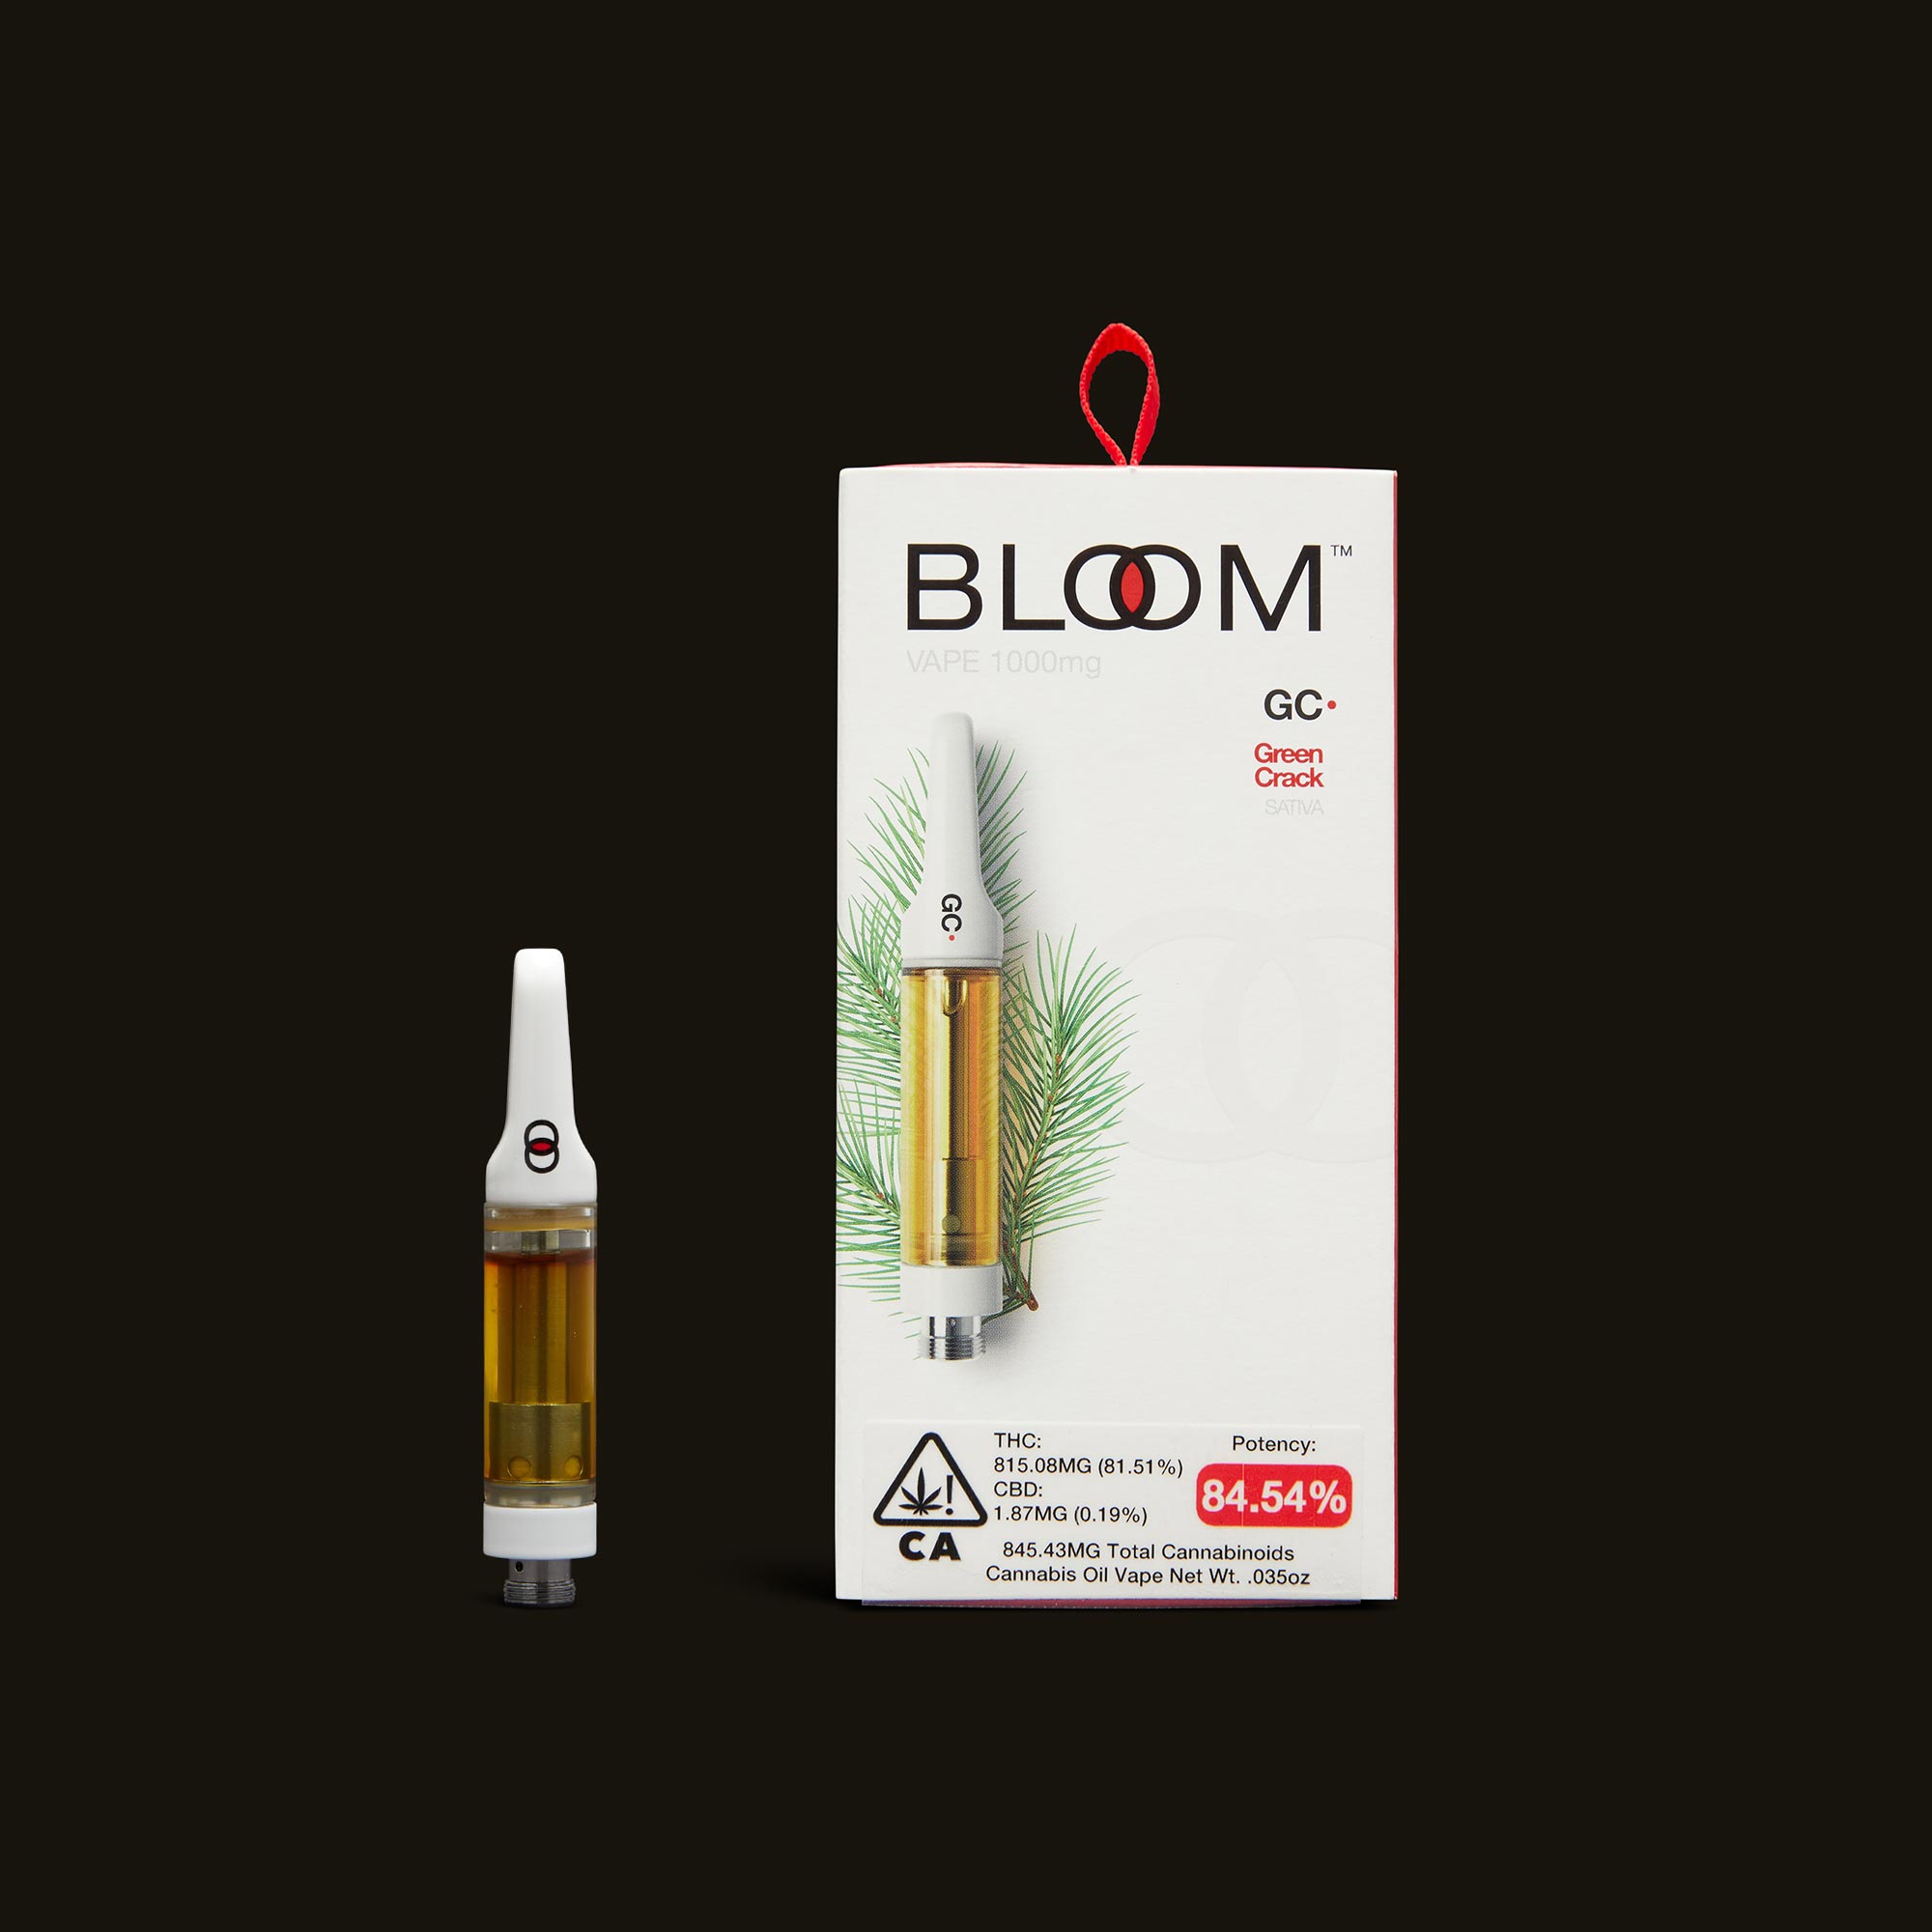 Bloom-Green-Crack-Cartridge-1g3694-1-2264107.jpg